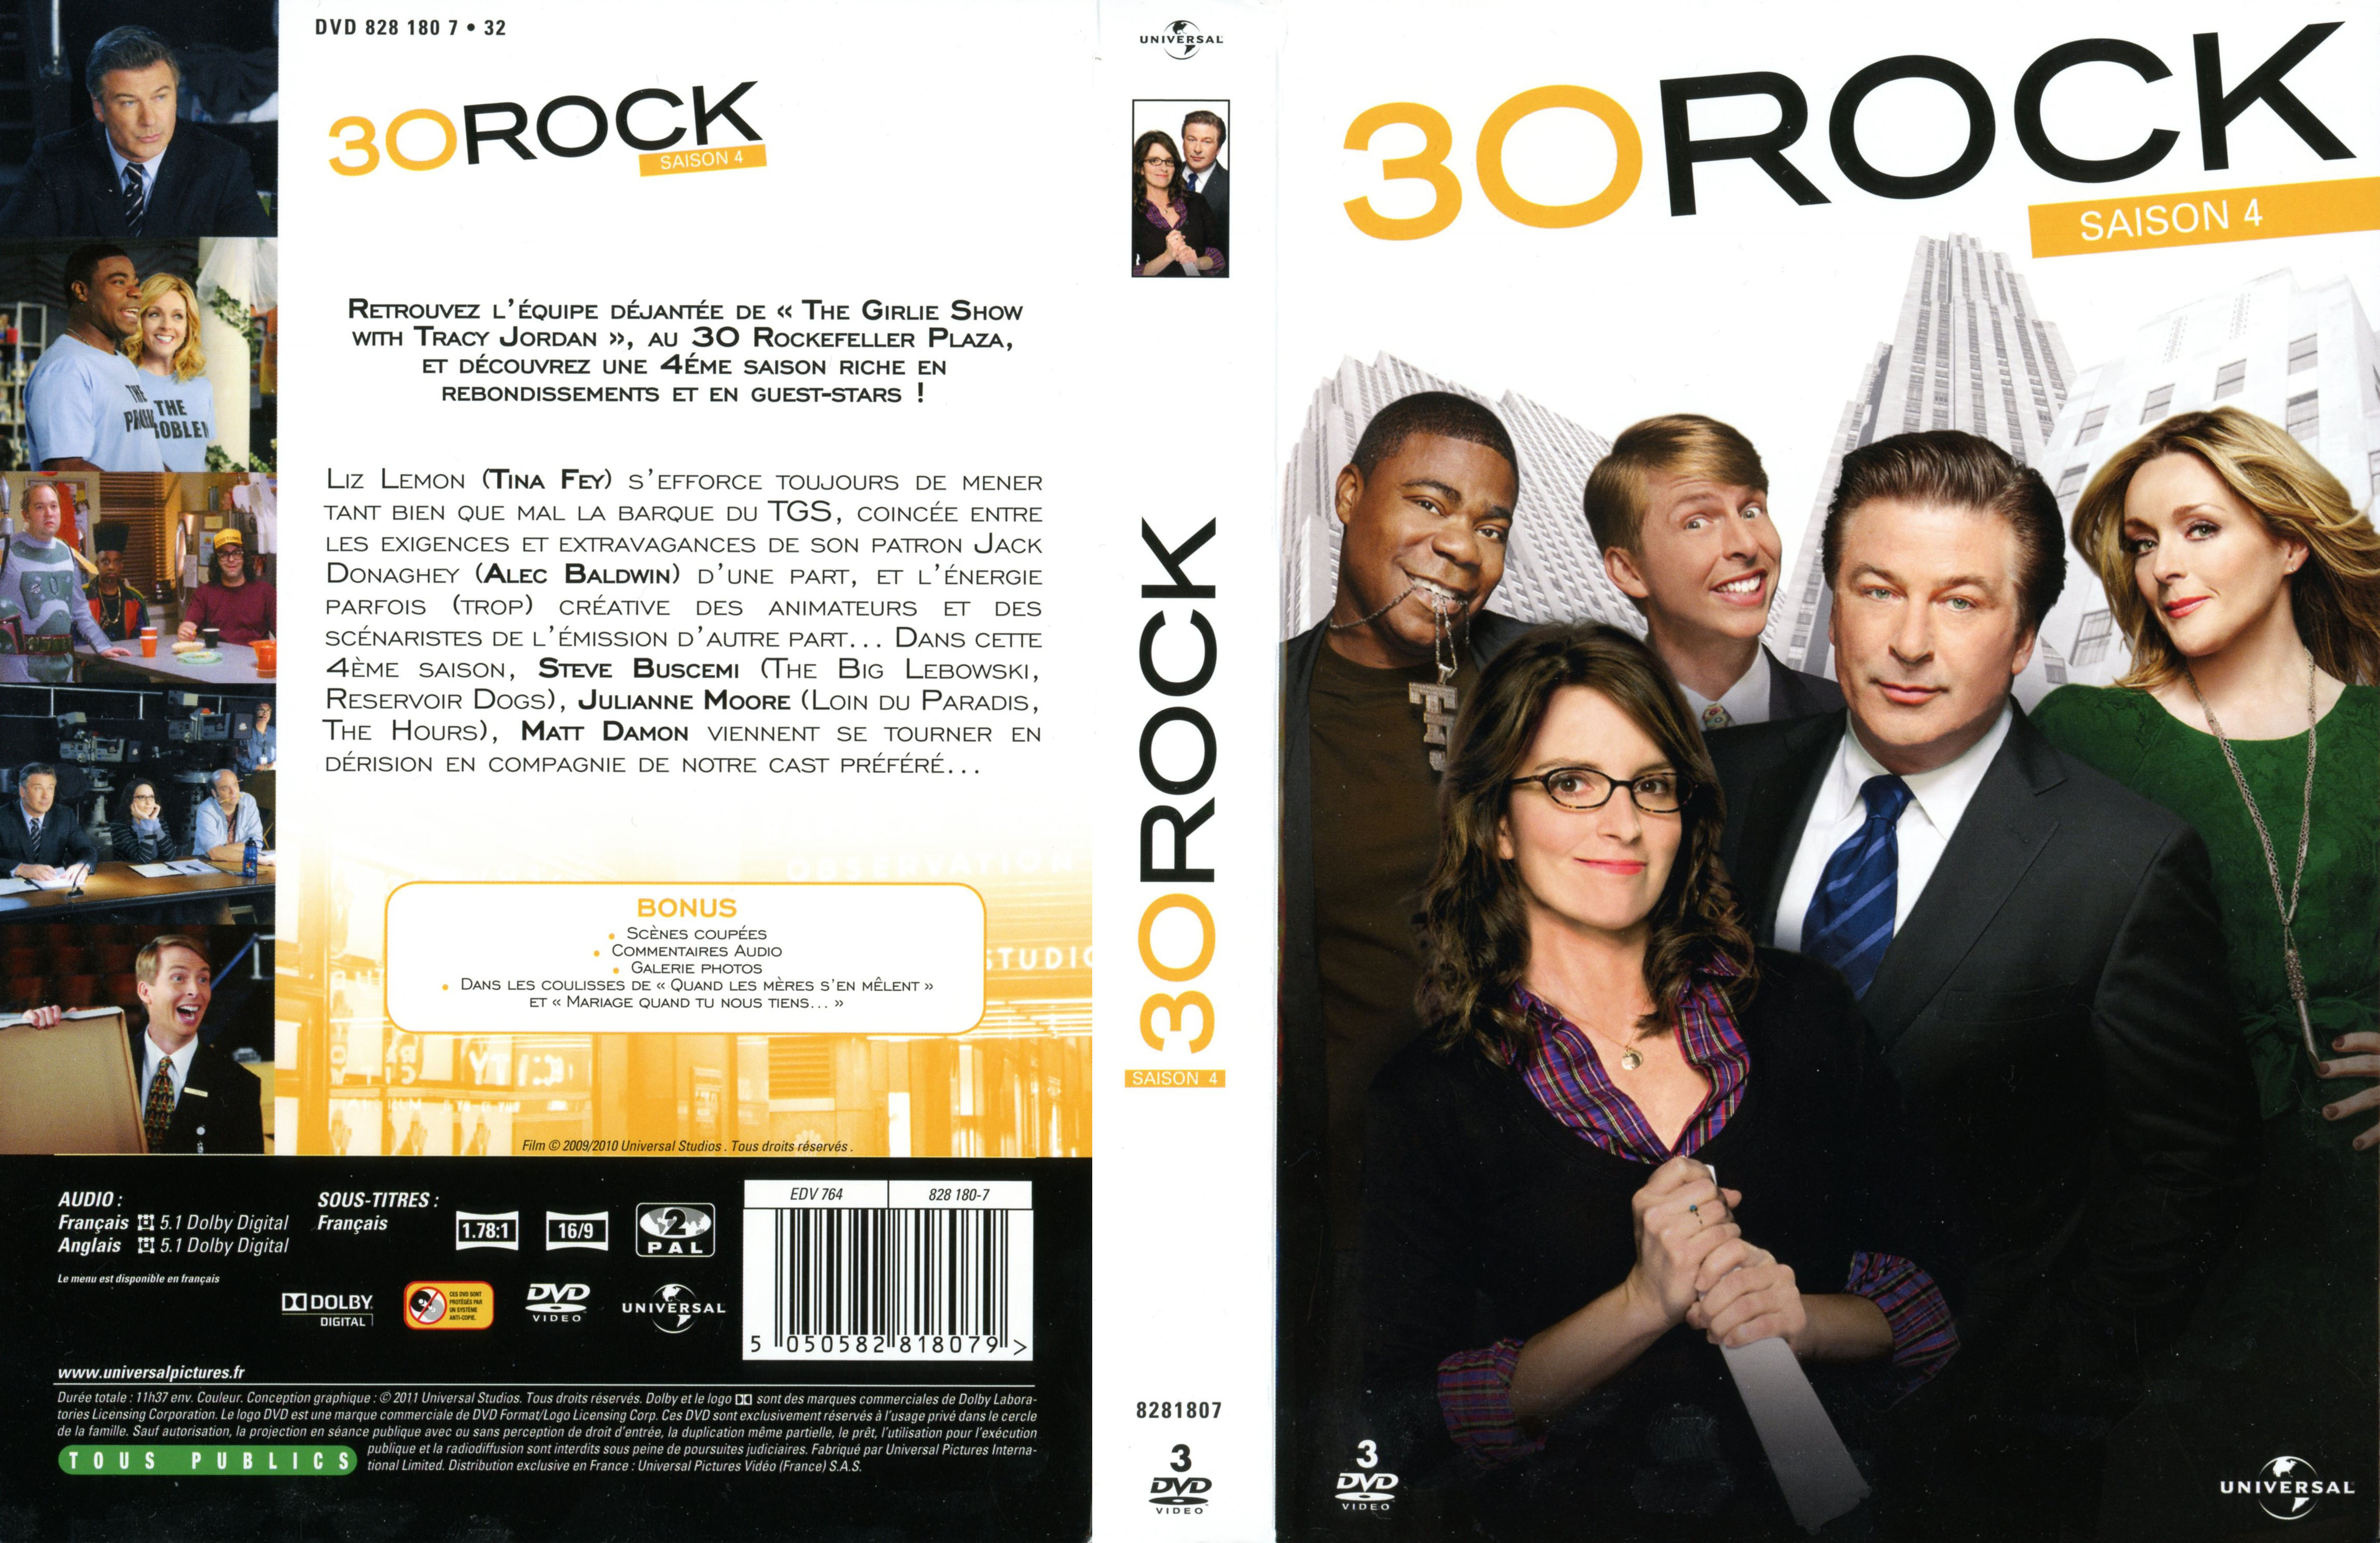 Jaquette DVD 30 Rock Saison 4